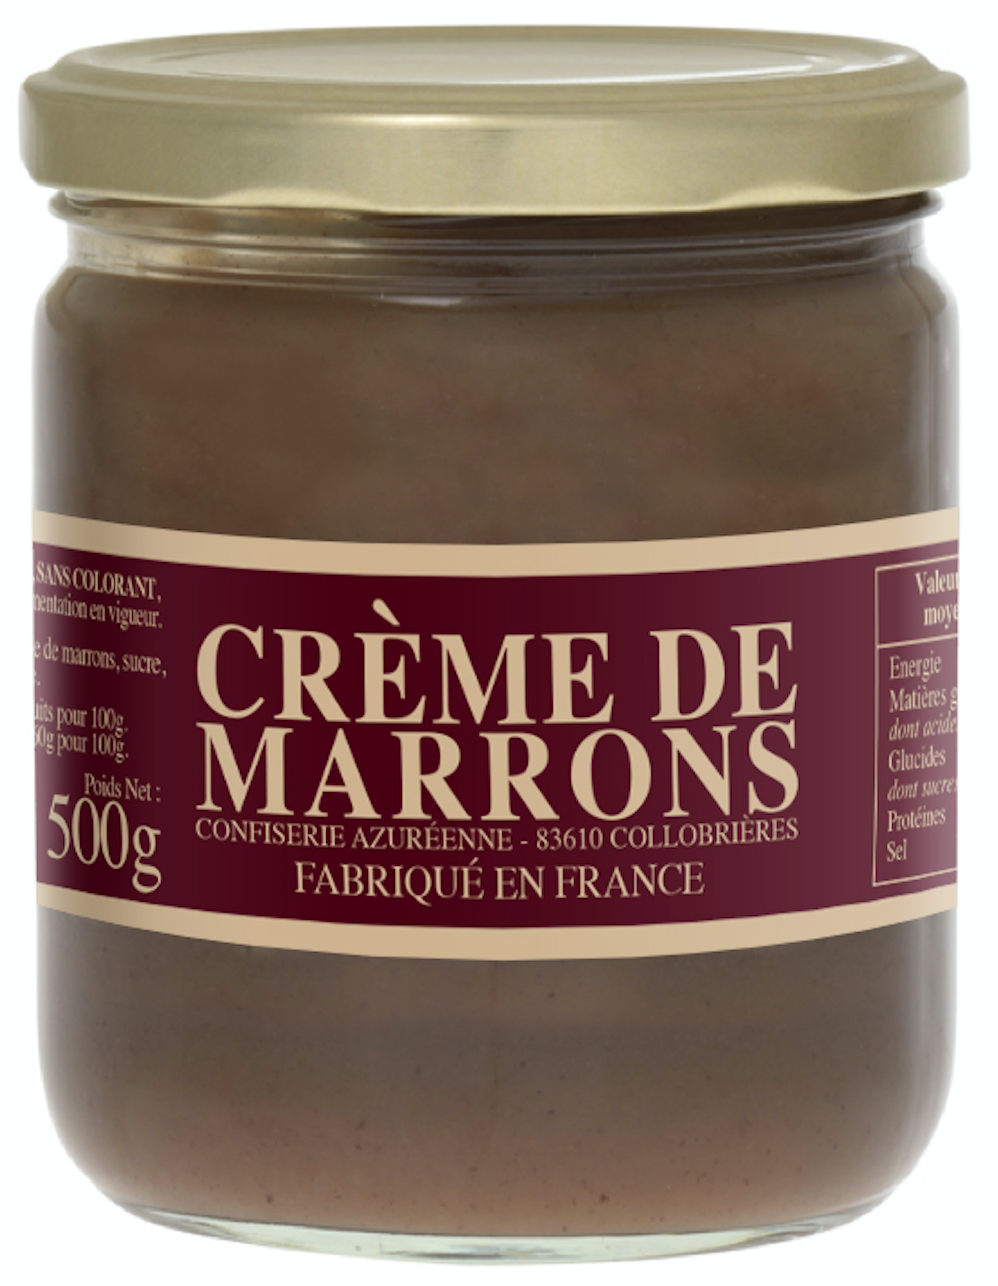 Crème de marrons 500g - Confiserie Azuréenne